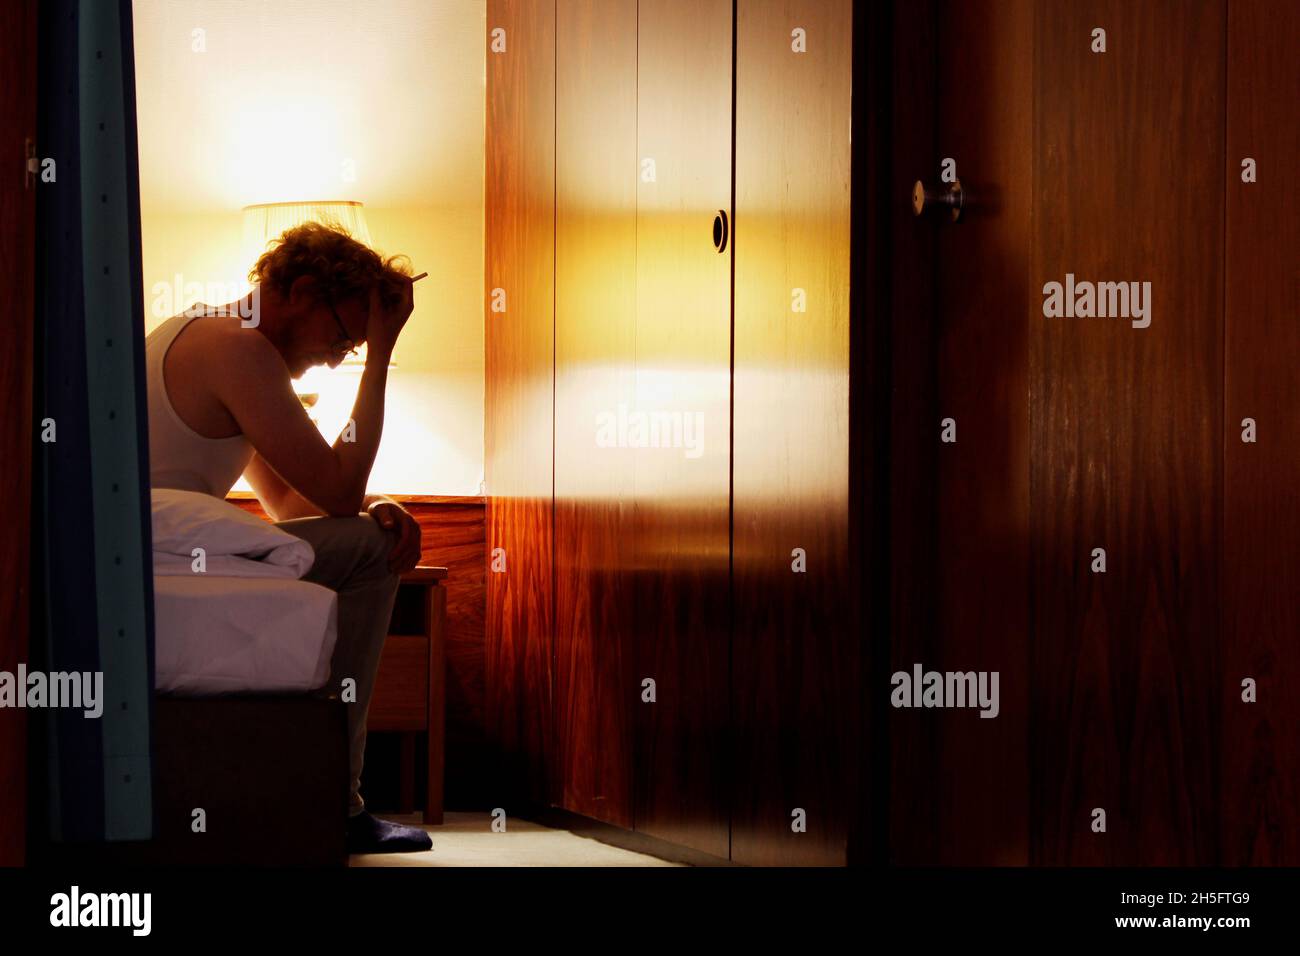 Ein Mann in einem weißen Unterhemd sitzt alleine im Hotelzimmer, den Kopf gesenkt, beide Hände vor dem Gesicht, mit einer Zigarette in der Hand. Stock Photo